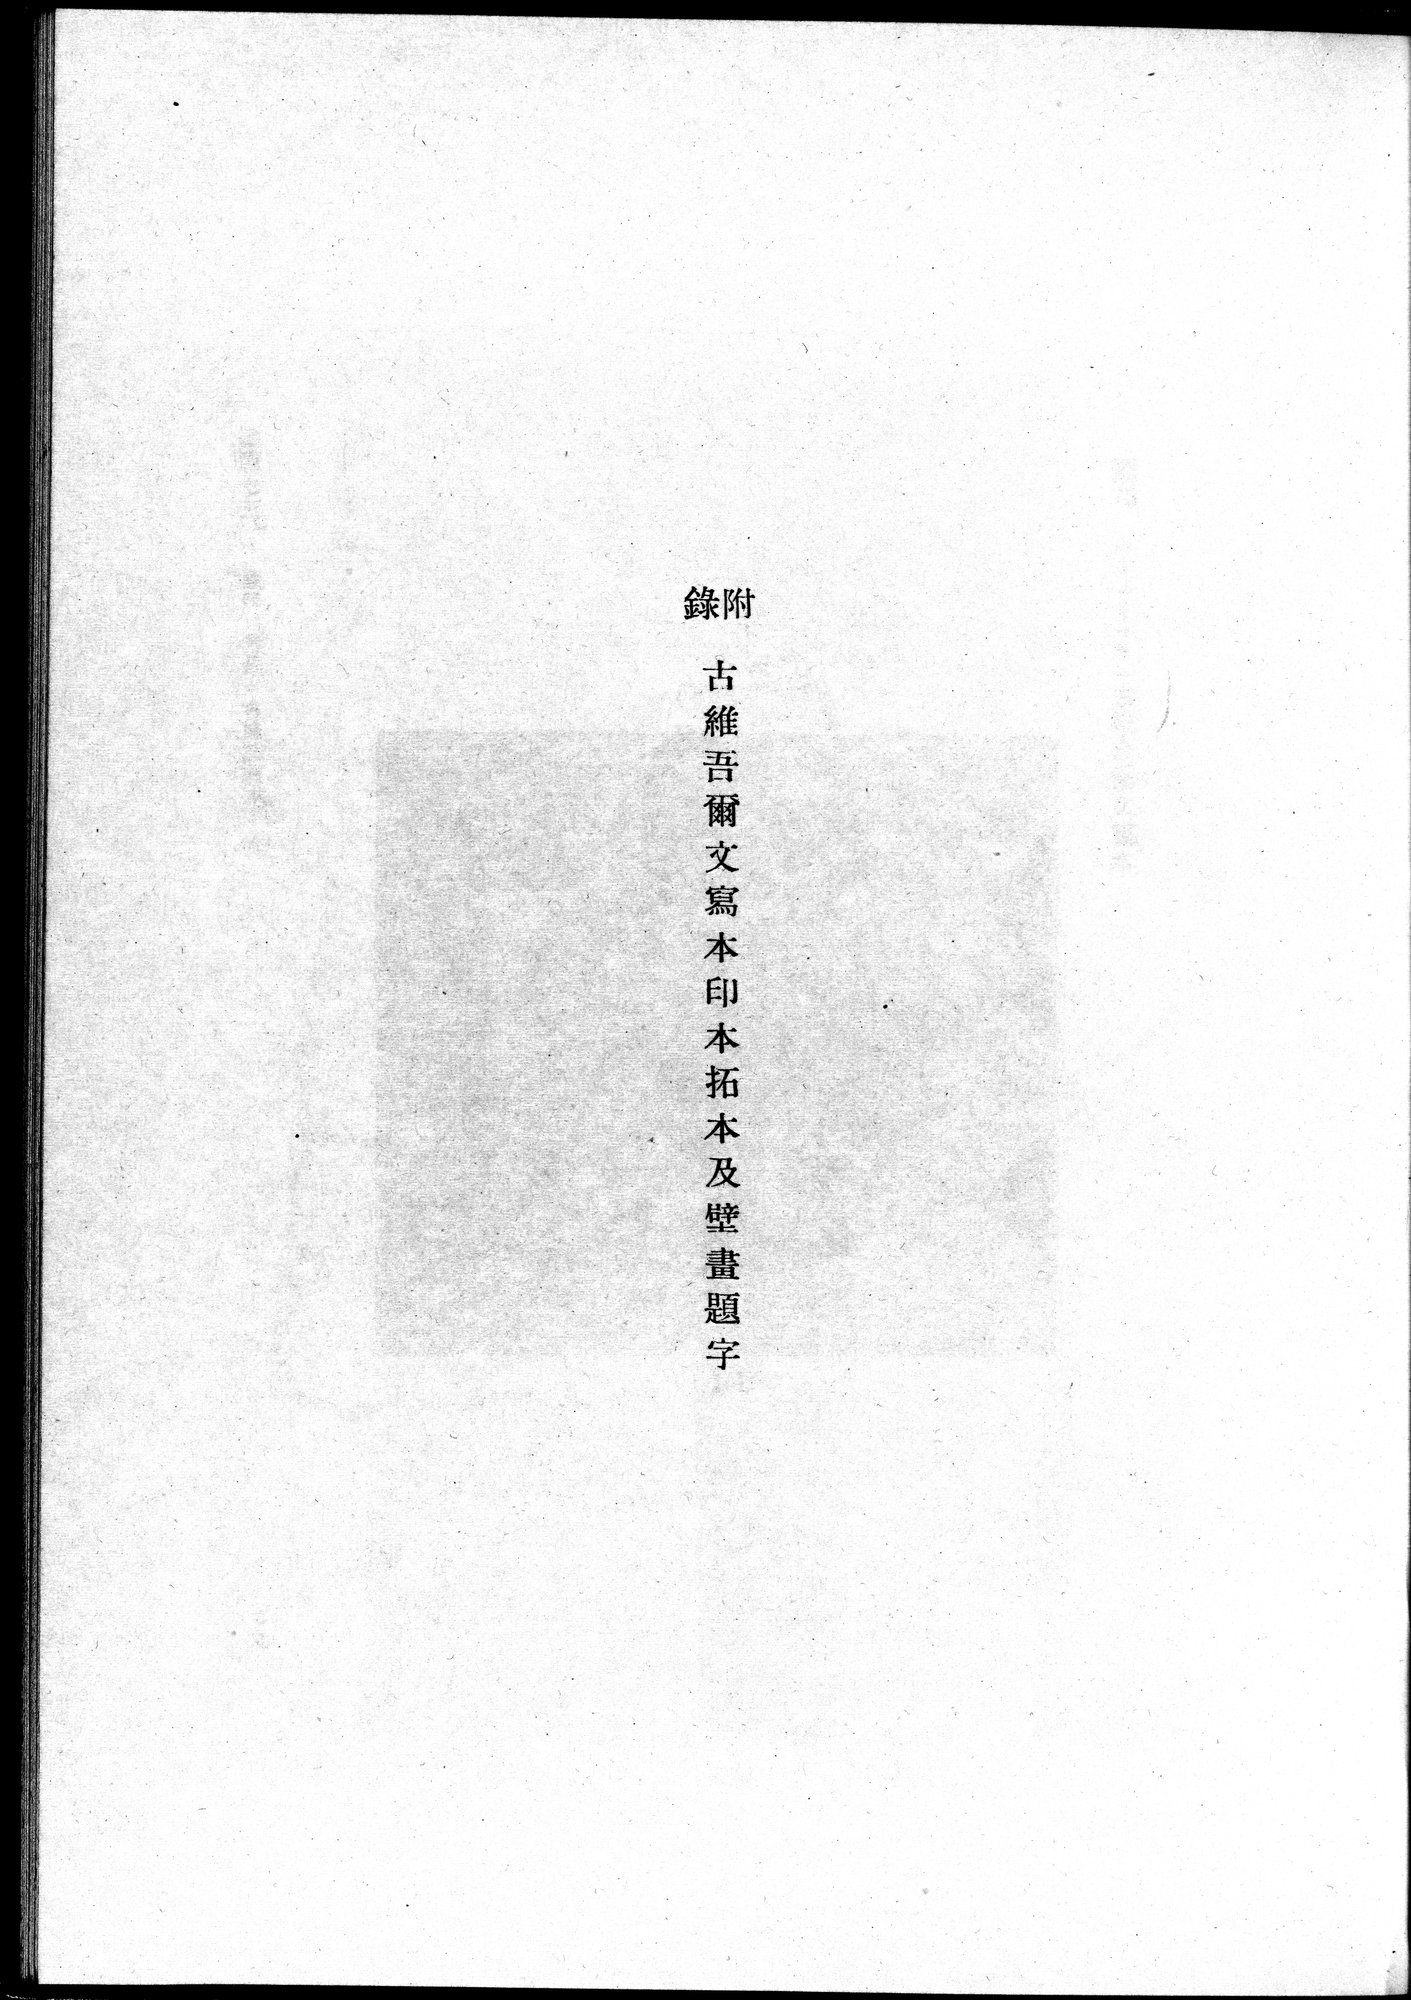 吐魯番考古記 : vol.1 / Page 187 (Grayscale High Resolution Image)